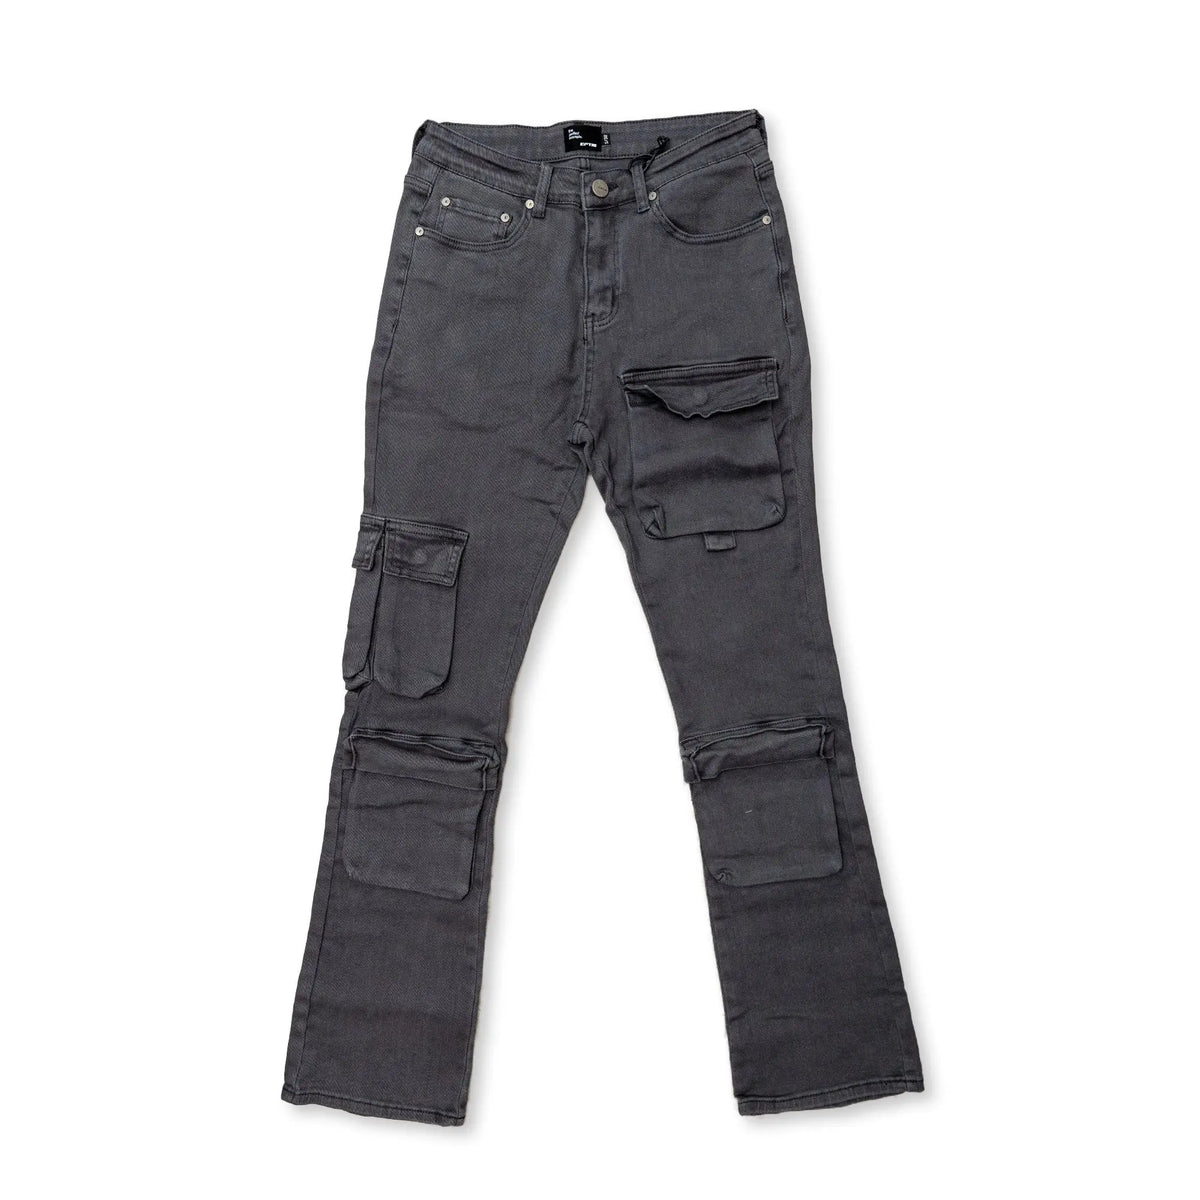 Backlot Cargo Pants - Grey – Men's Closet